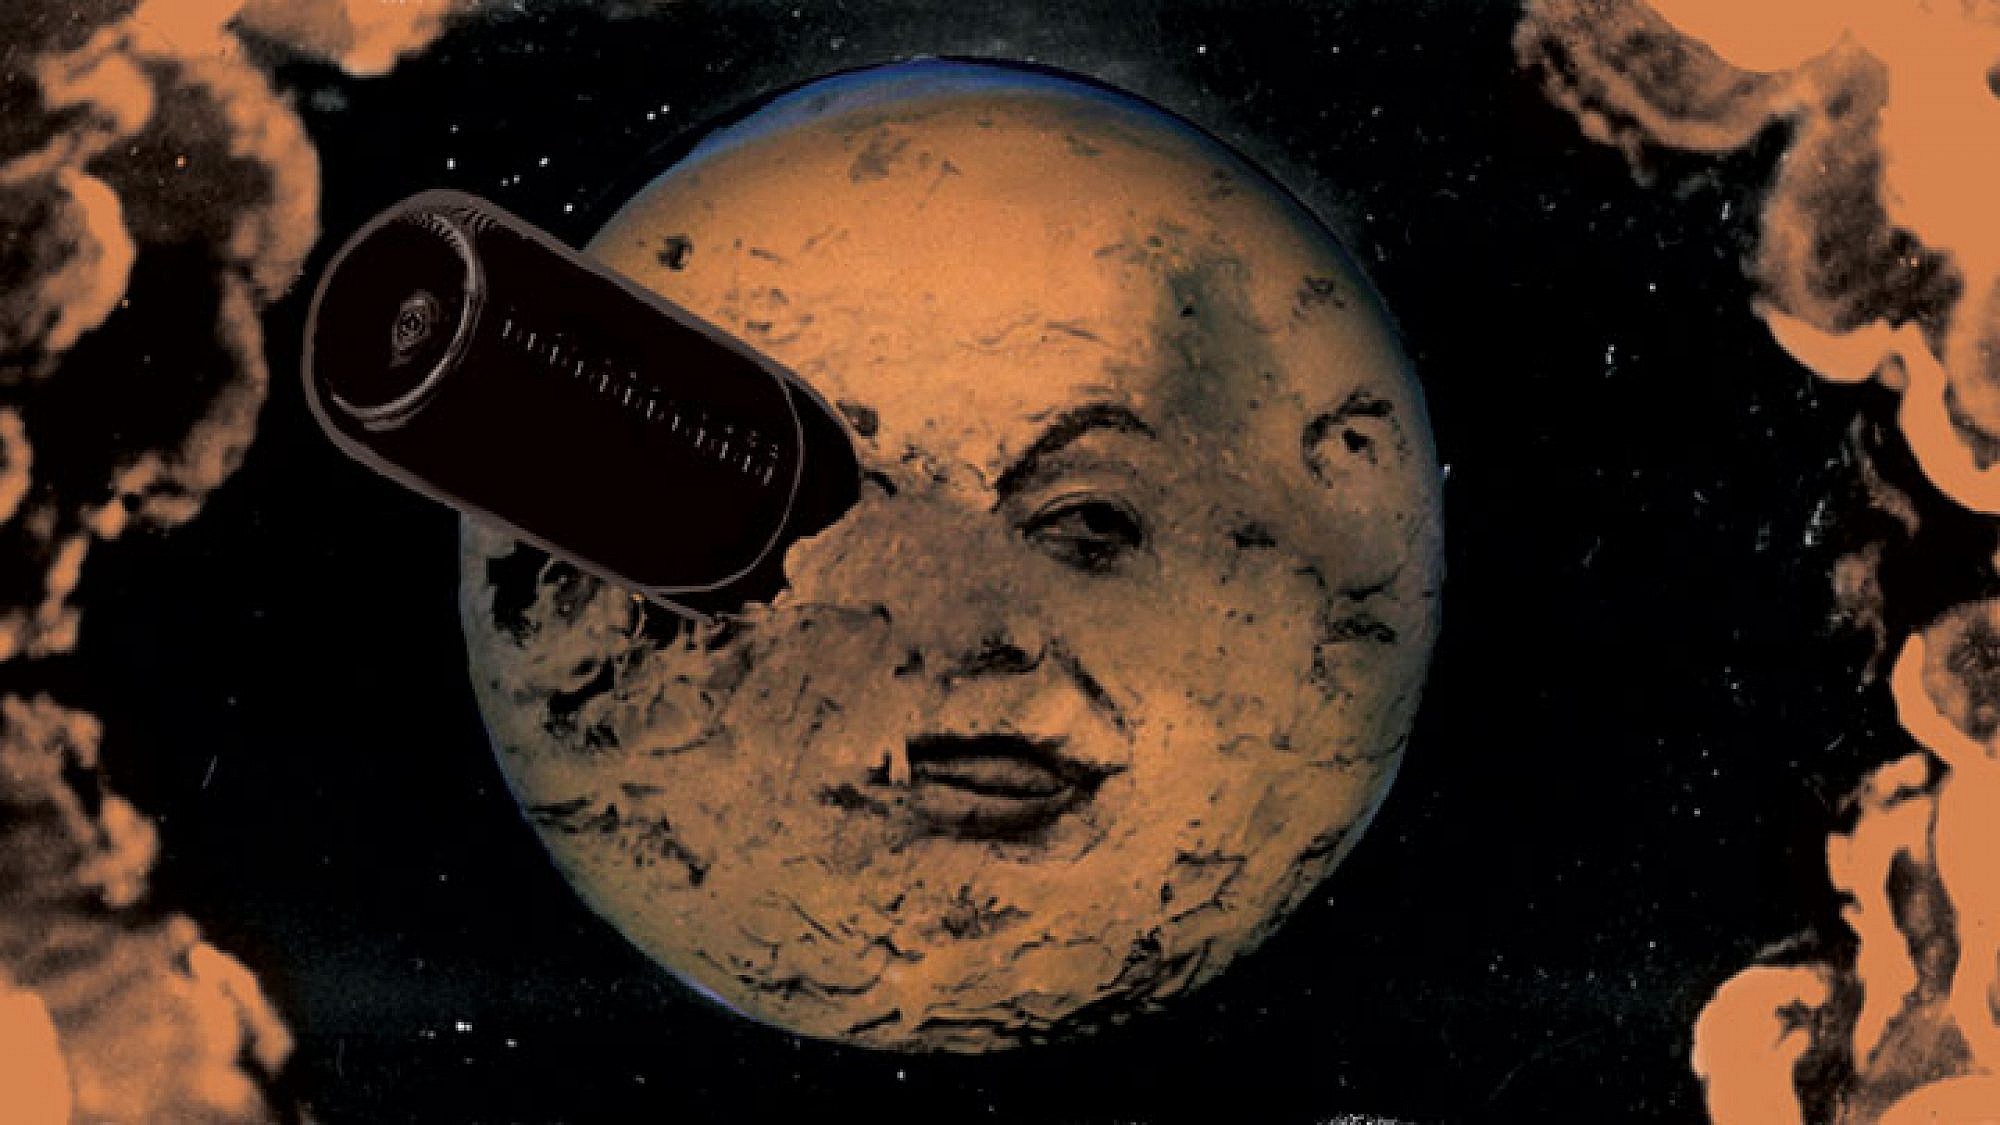 צילום מתוך הסרט "מסע אל הירח" של ז'ורז' מלייס